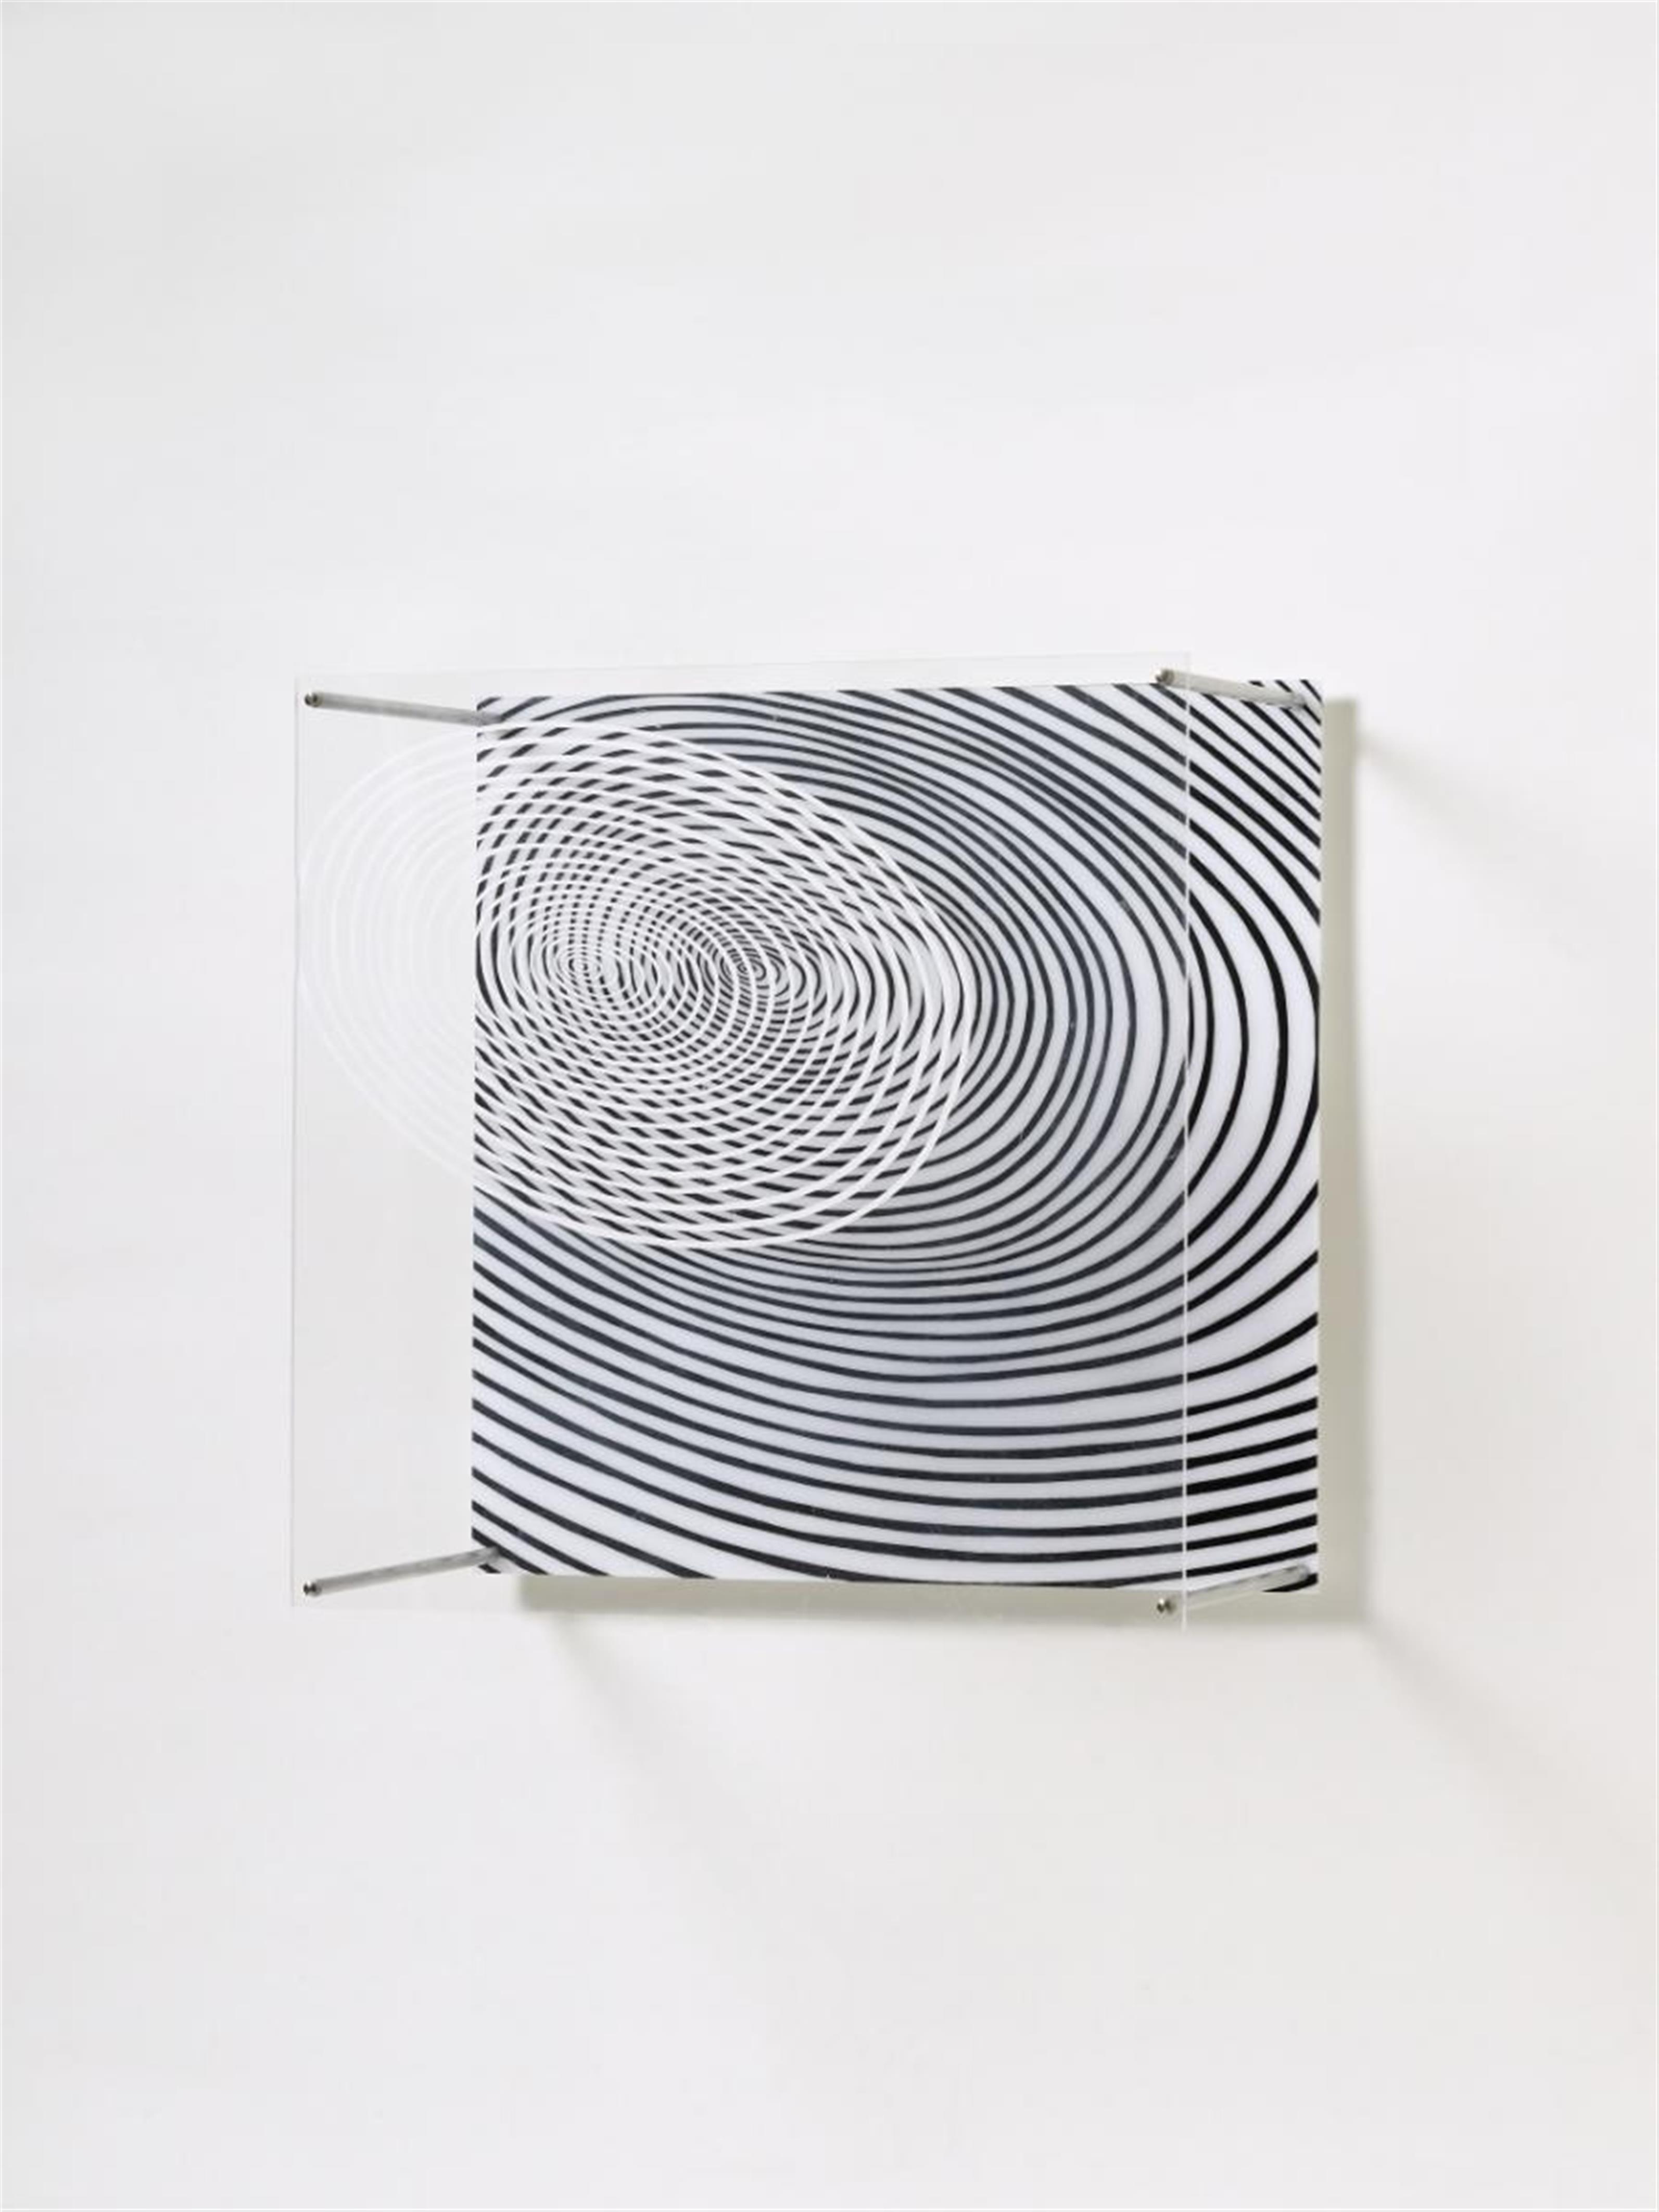 Jesus Raphael Soto - Spirales (spirals) - image-1